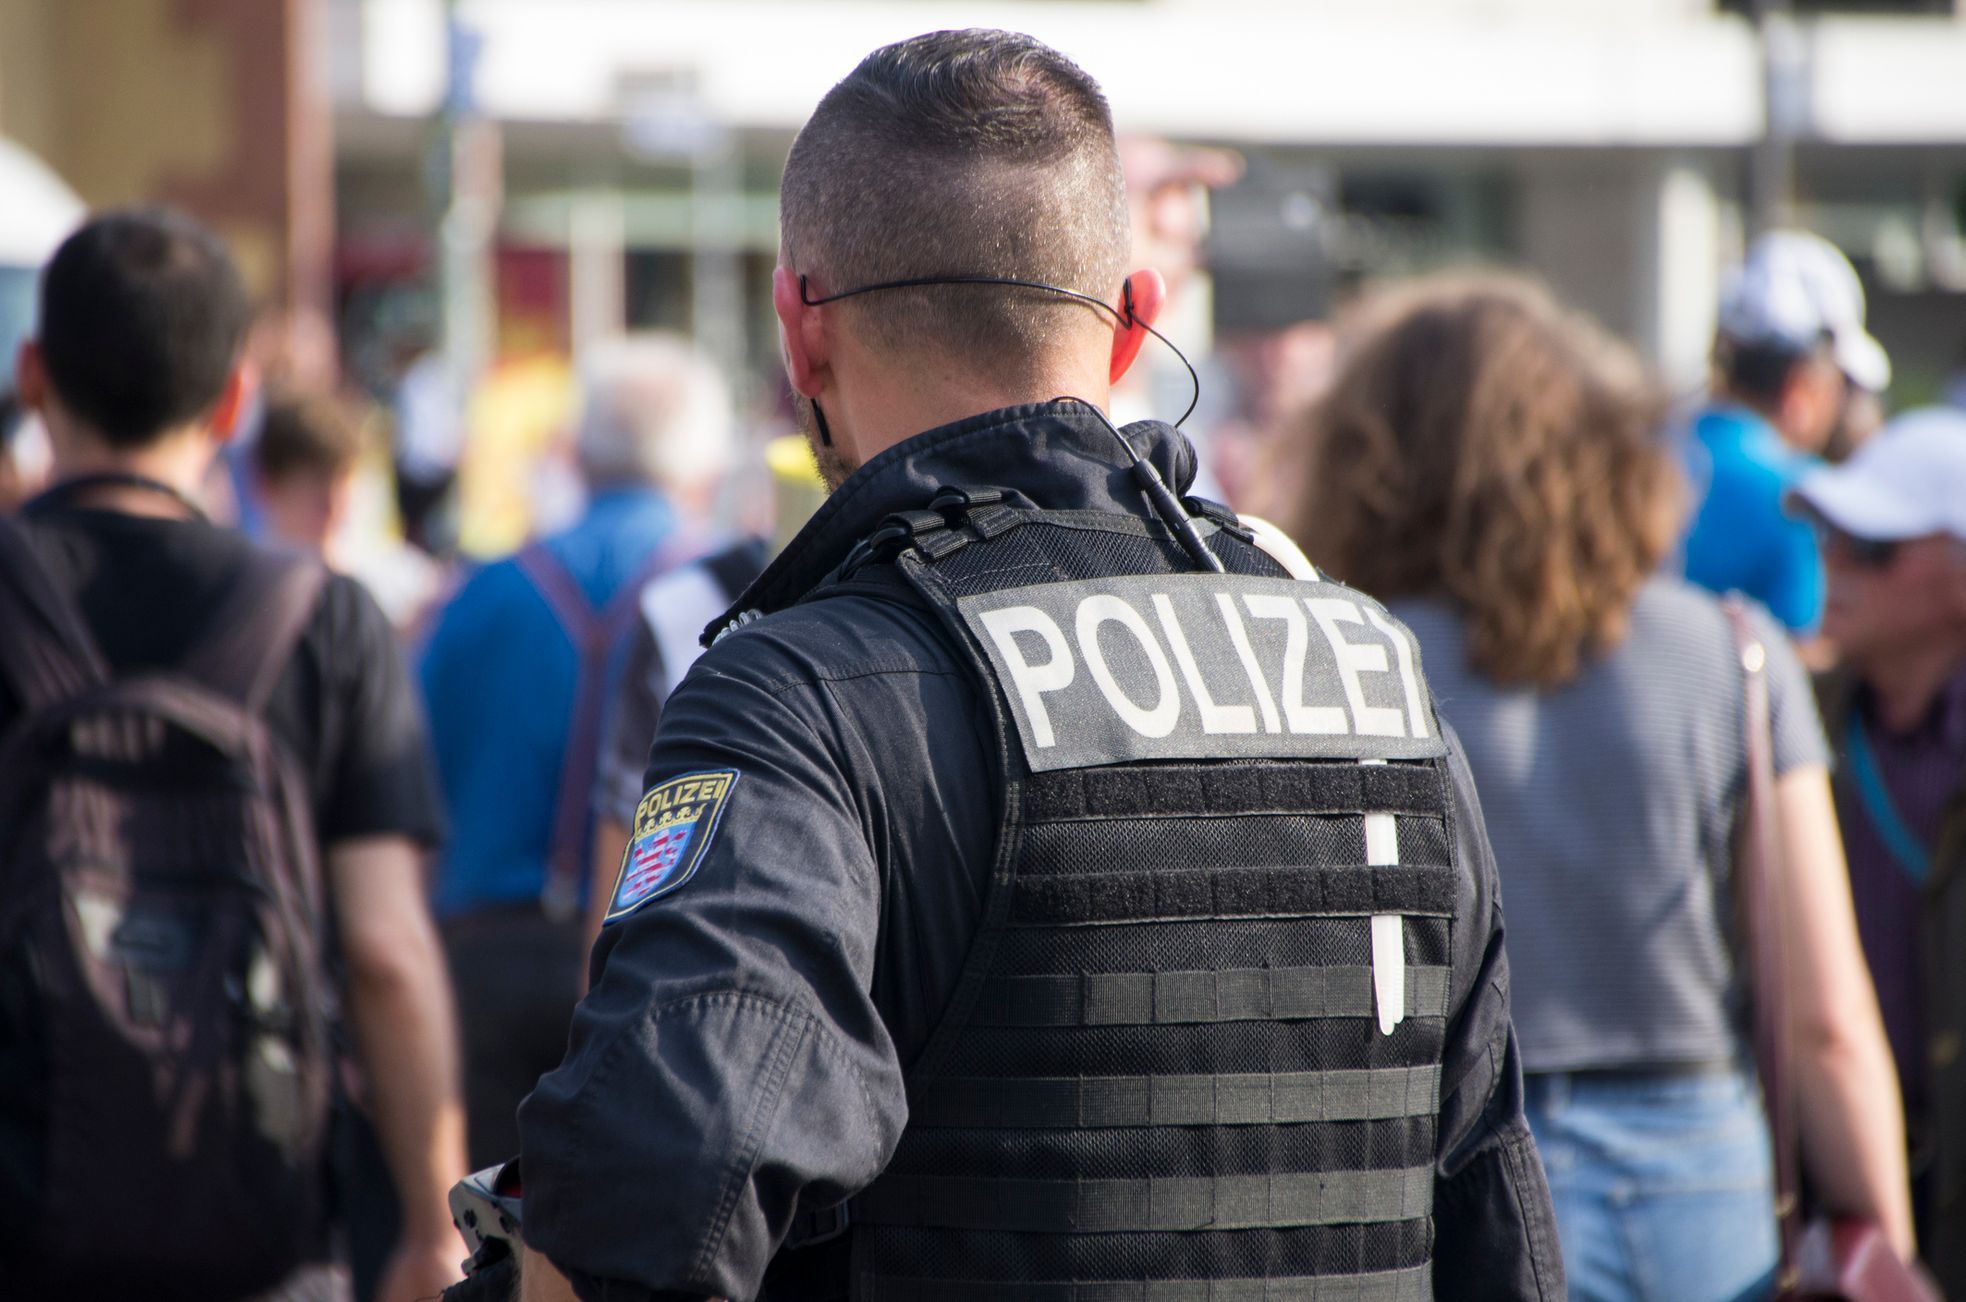 Skandal in Deutschland.  Sensible Daten über Frauen werden von der Polizei durchgesickert und von Extremisten bedroht